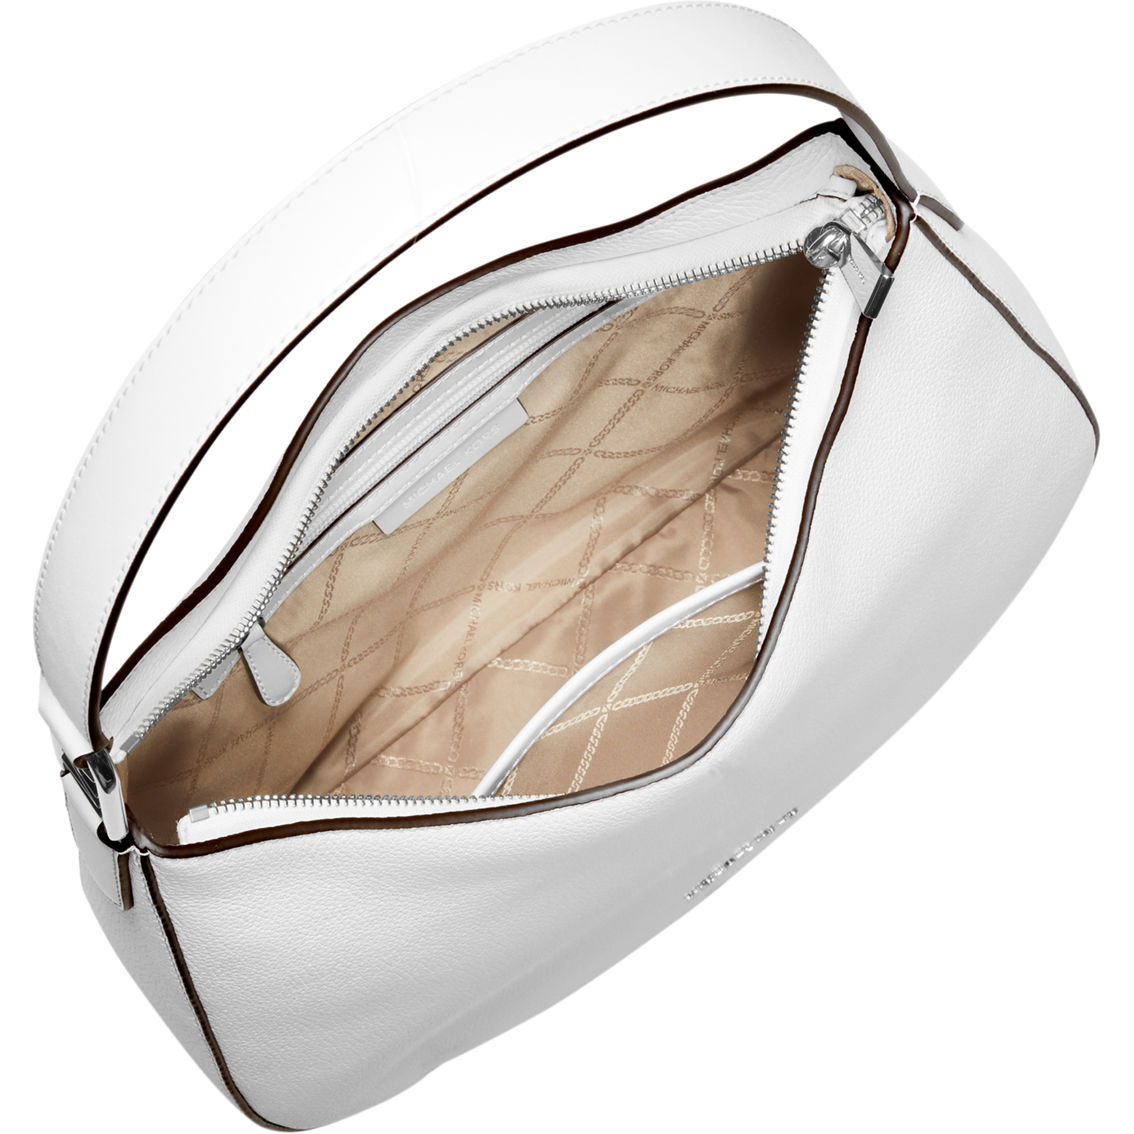 Michael Kors Kensington Optic White Large Top Zip Hobo Shoulder Bag - Image 3 of 4